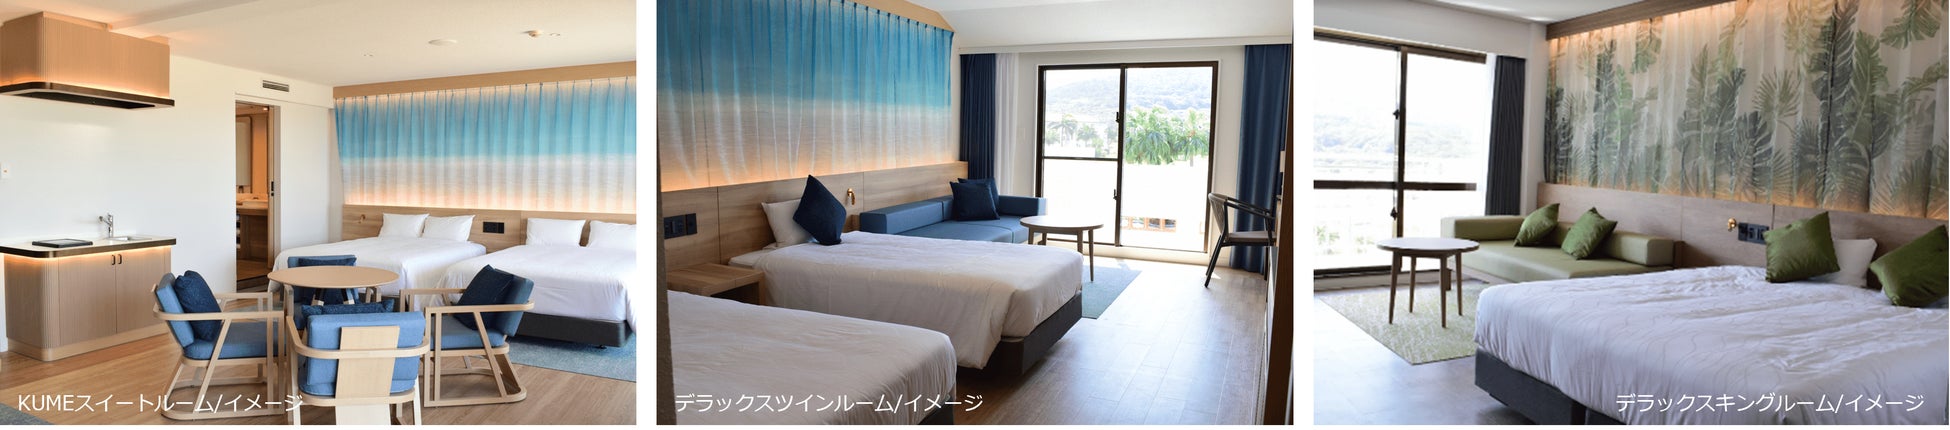 アパホテル〈熊本桜町バスターミナル南〉ペットと泊まれる「ステイウィズドッグルーム」を新設し、本日リニューアルオープン